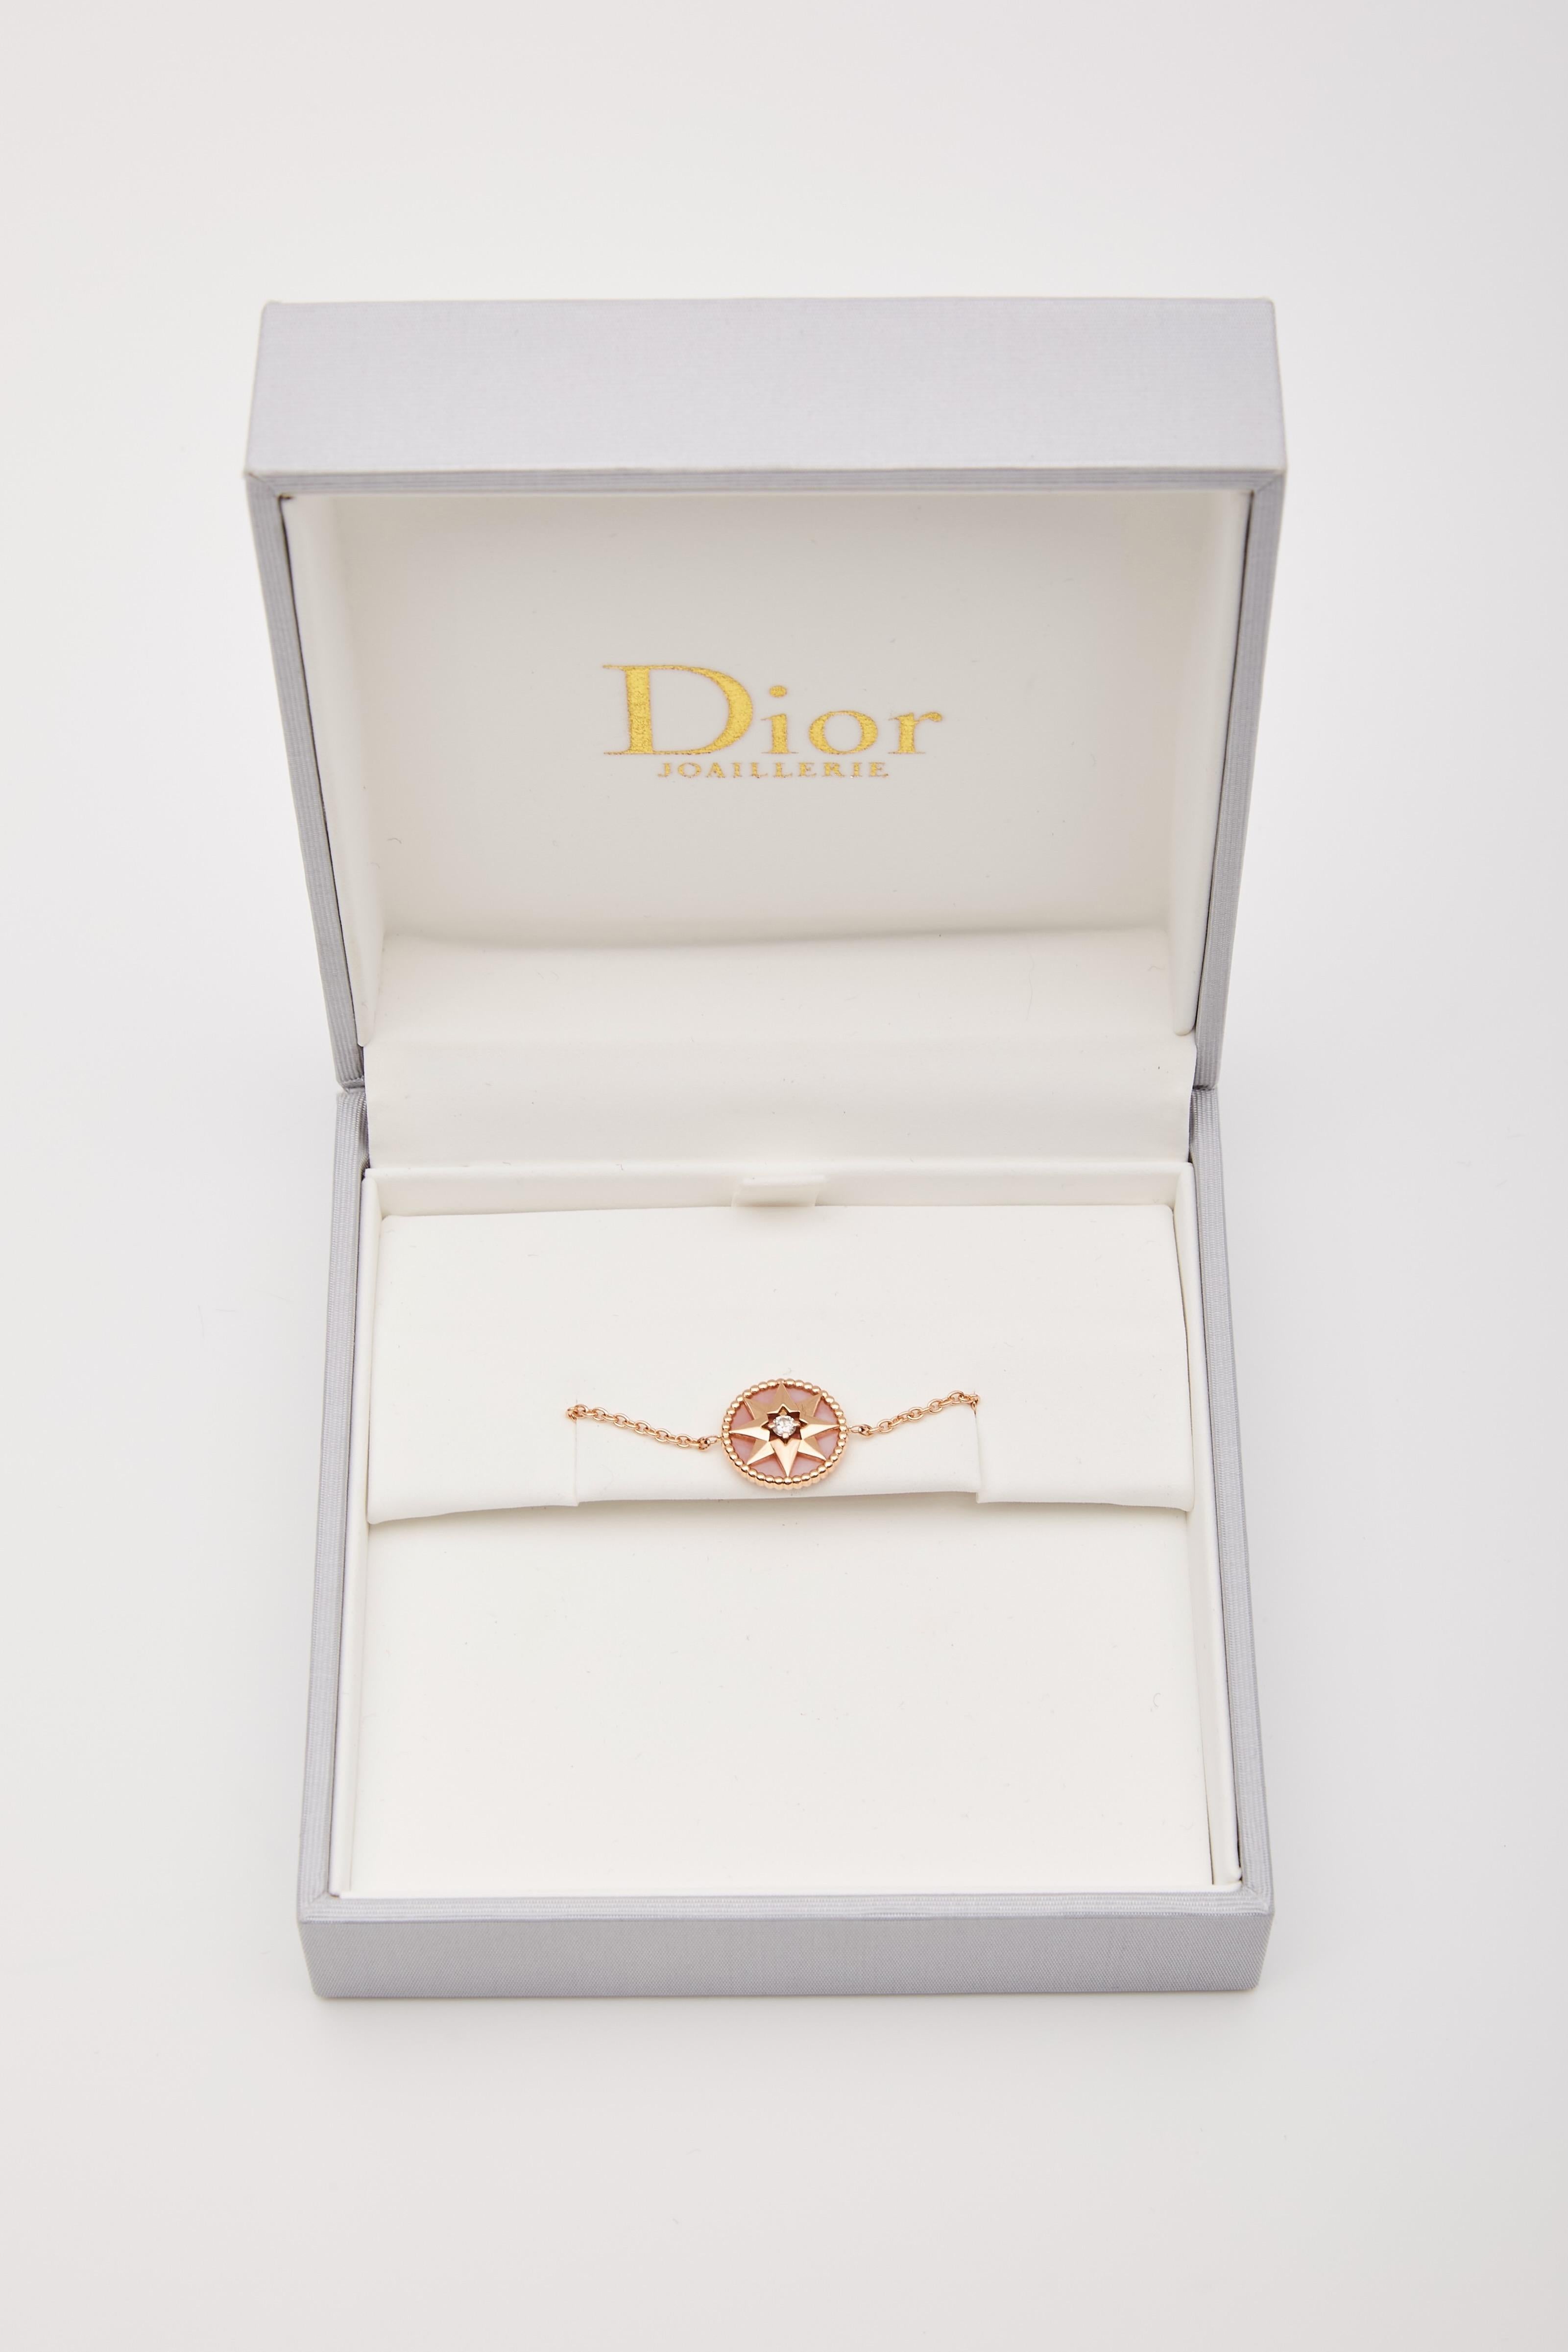 DIOR 18K DIAMANT  BRACELET À BRELOQUES ROSE DE VENTS

Voici le bracelet en perles Dior à motif étoilé et à breloques en or rose. Le bracelet est composé d'une chaîne en or rose 18 carats et d'un pendentif en forme d'étoile orné d'un magnifique